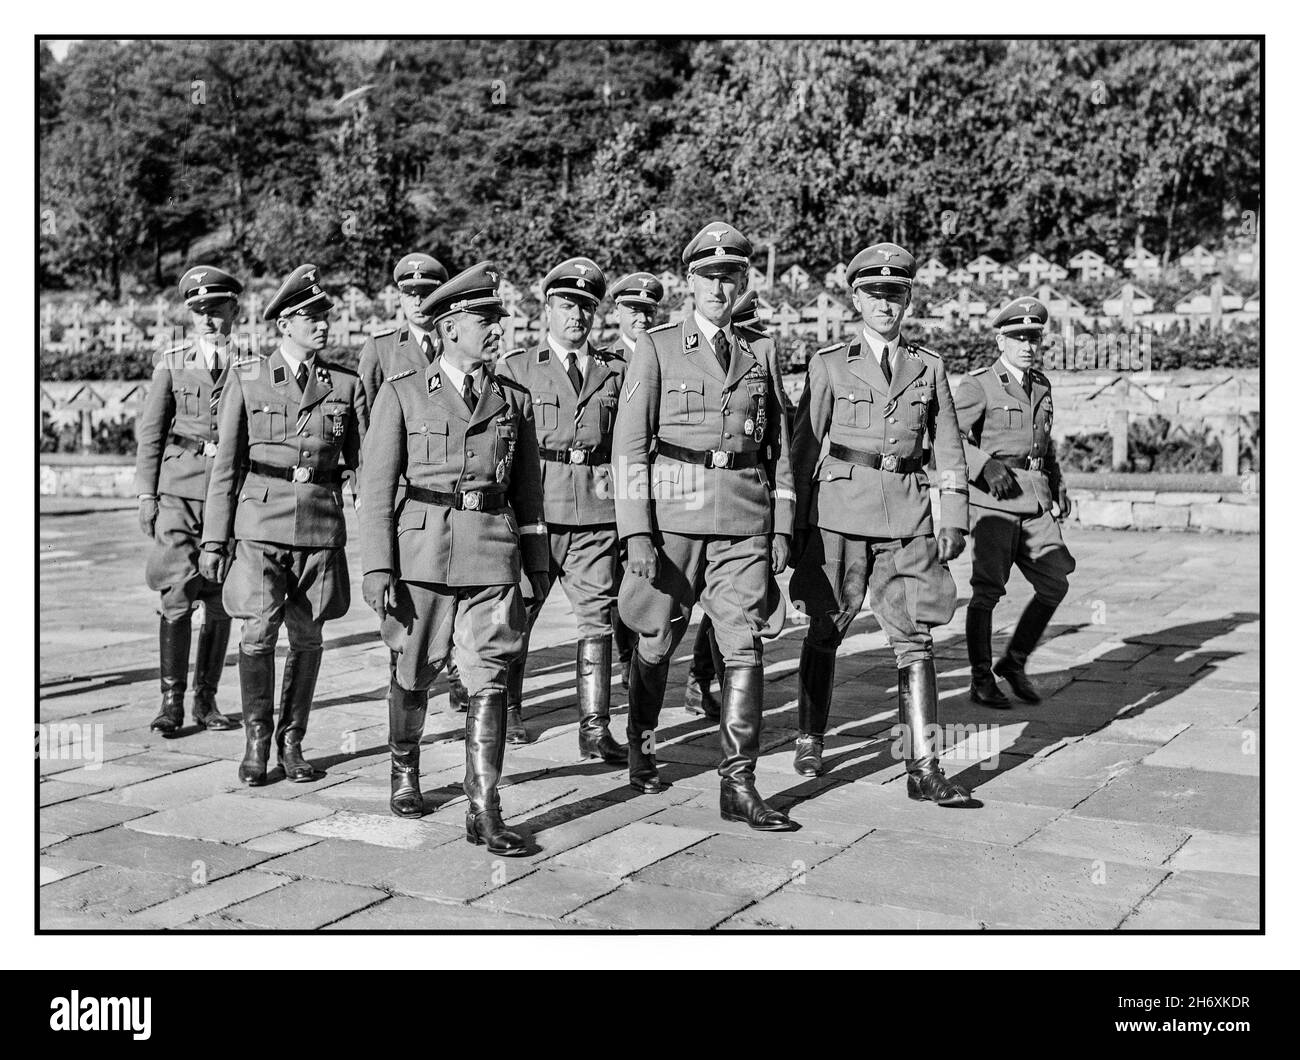 Image de propagande nazie comprenant Reinhard Heydrich au cimetière d'Ekeberg pour les soldats allemands à Oslo lors de sa visite en Norvège du 3-6 septembre 1941.Heydrich (1904 – 1942) était un SS-Obergruppenführer und General der Polizei (chef de groupe principal et général de police) ainsi que le chef du bureau principal de sécurité de Reich (RSHA) (y compris la Gestapo, la Kripo et le SD).Heydrich marchant devant l'officier SS Georg Wilhelm Müller [note not SS-Brigadeführer/SS-Gruppenführer Heinrich Müller (chef de la Gestapo)] à sa droite et SS Oberführer Heinrich Fehlis (chef de SD et Sipo en Norvège) à sa gauche. Banque D'Images